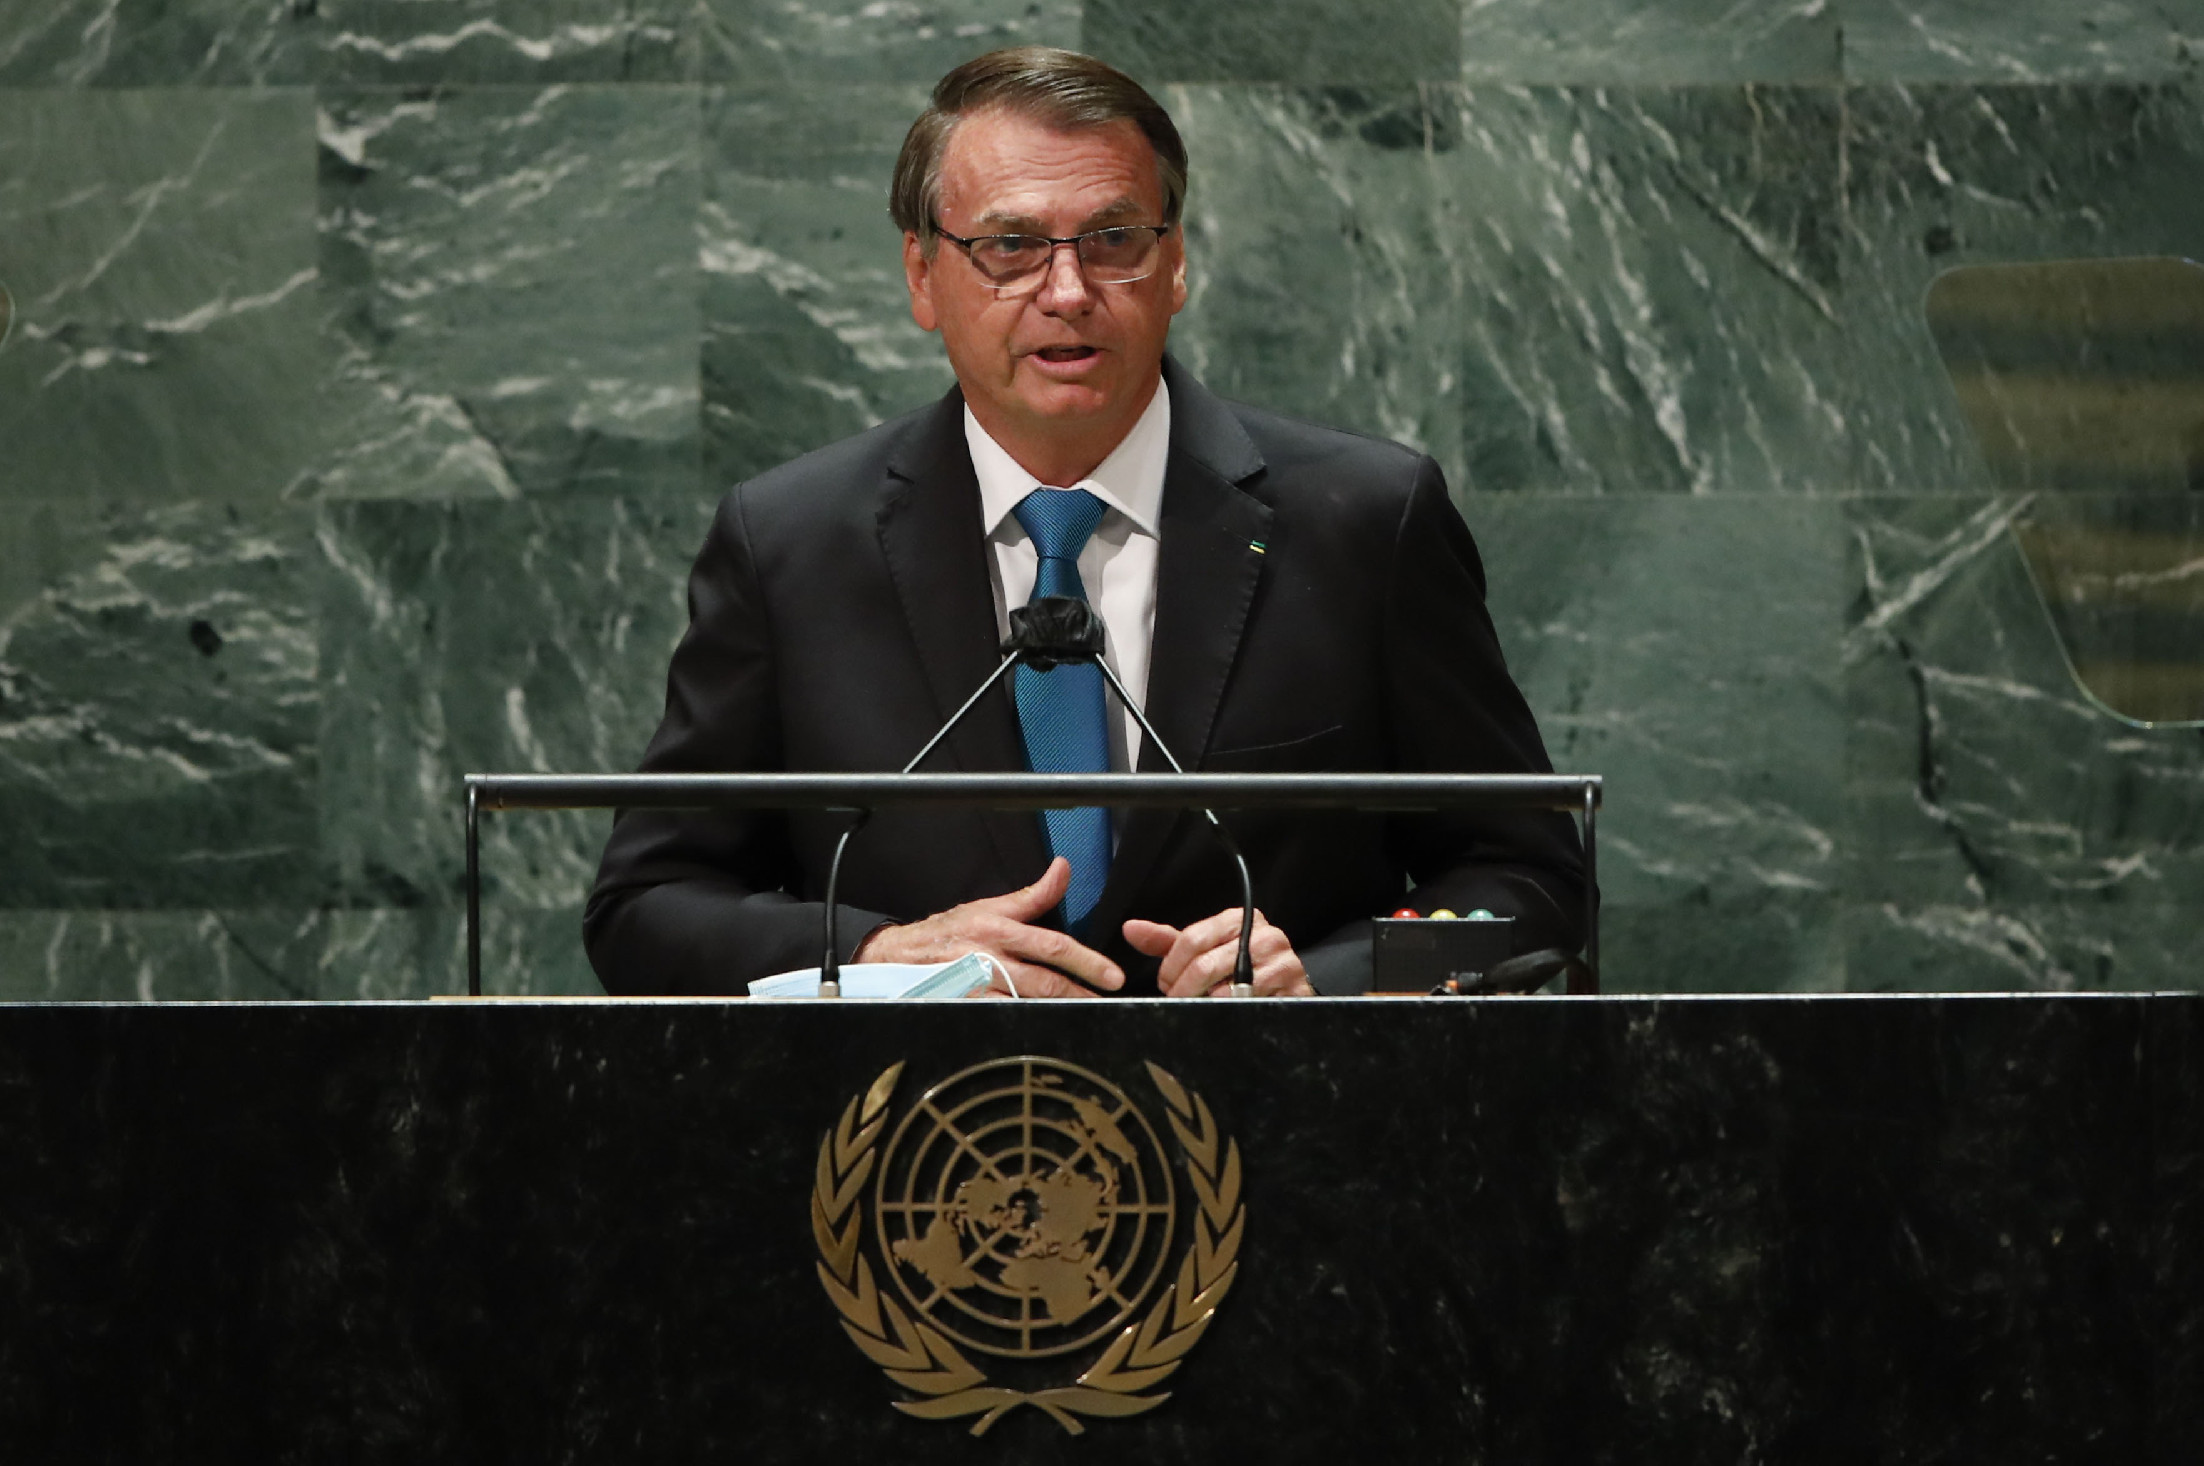 Oltás nélkül ment az ENSZ-közgyűlésre a brazil elnök, maszkját is levette